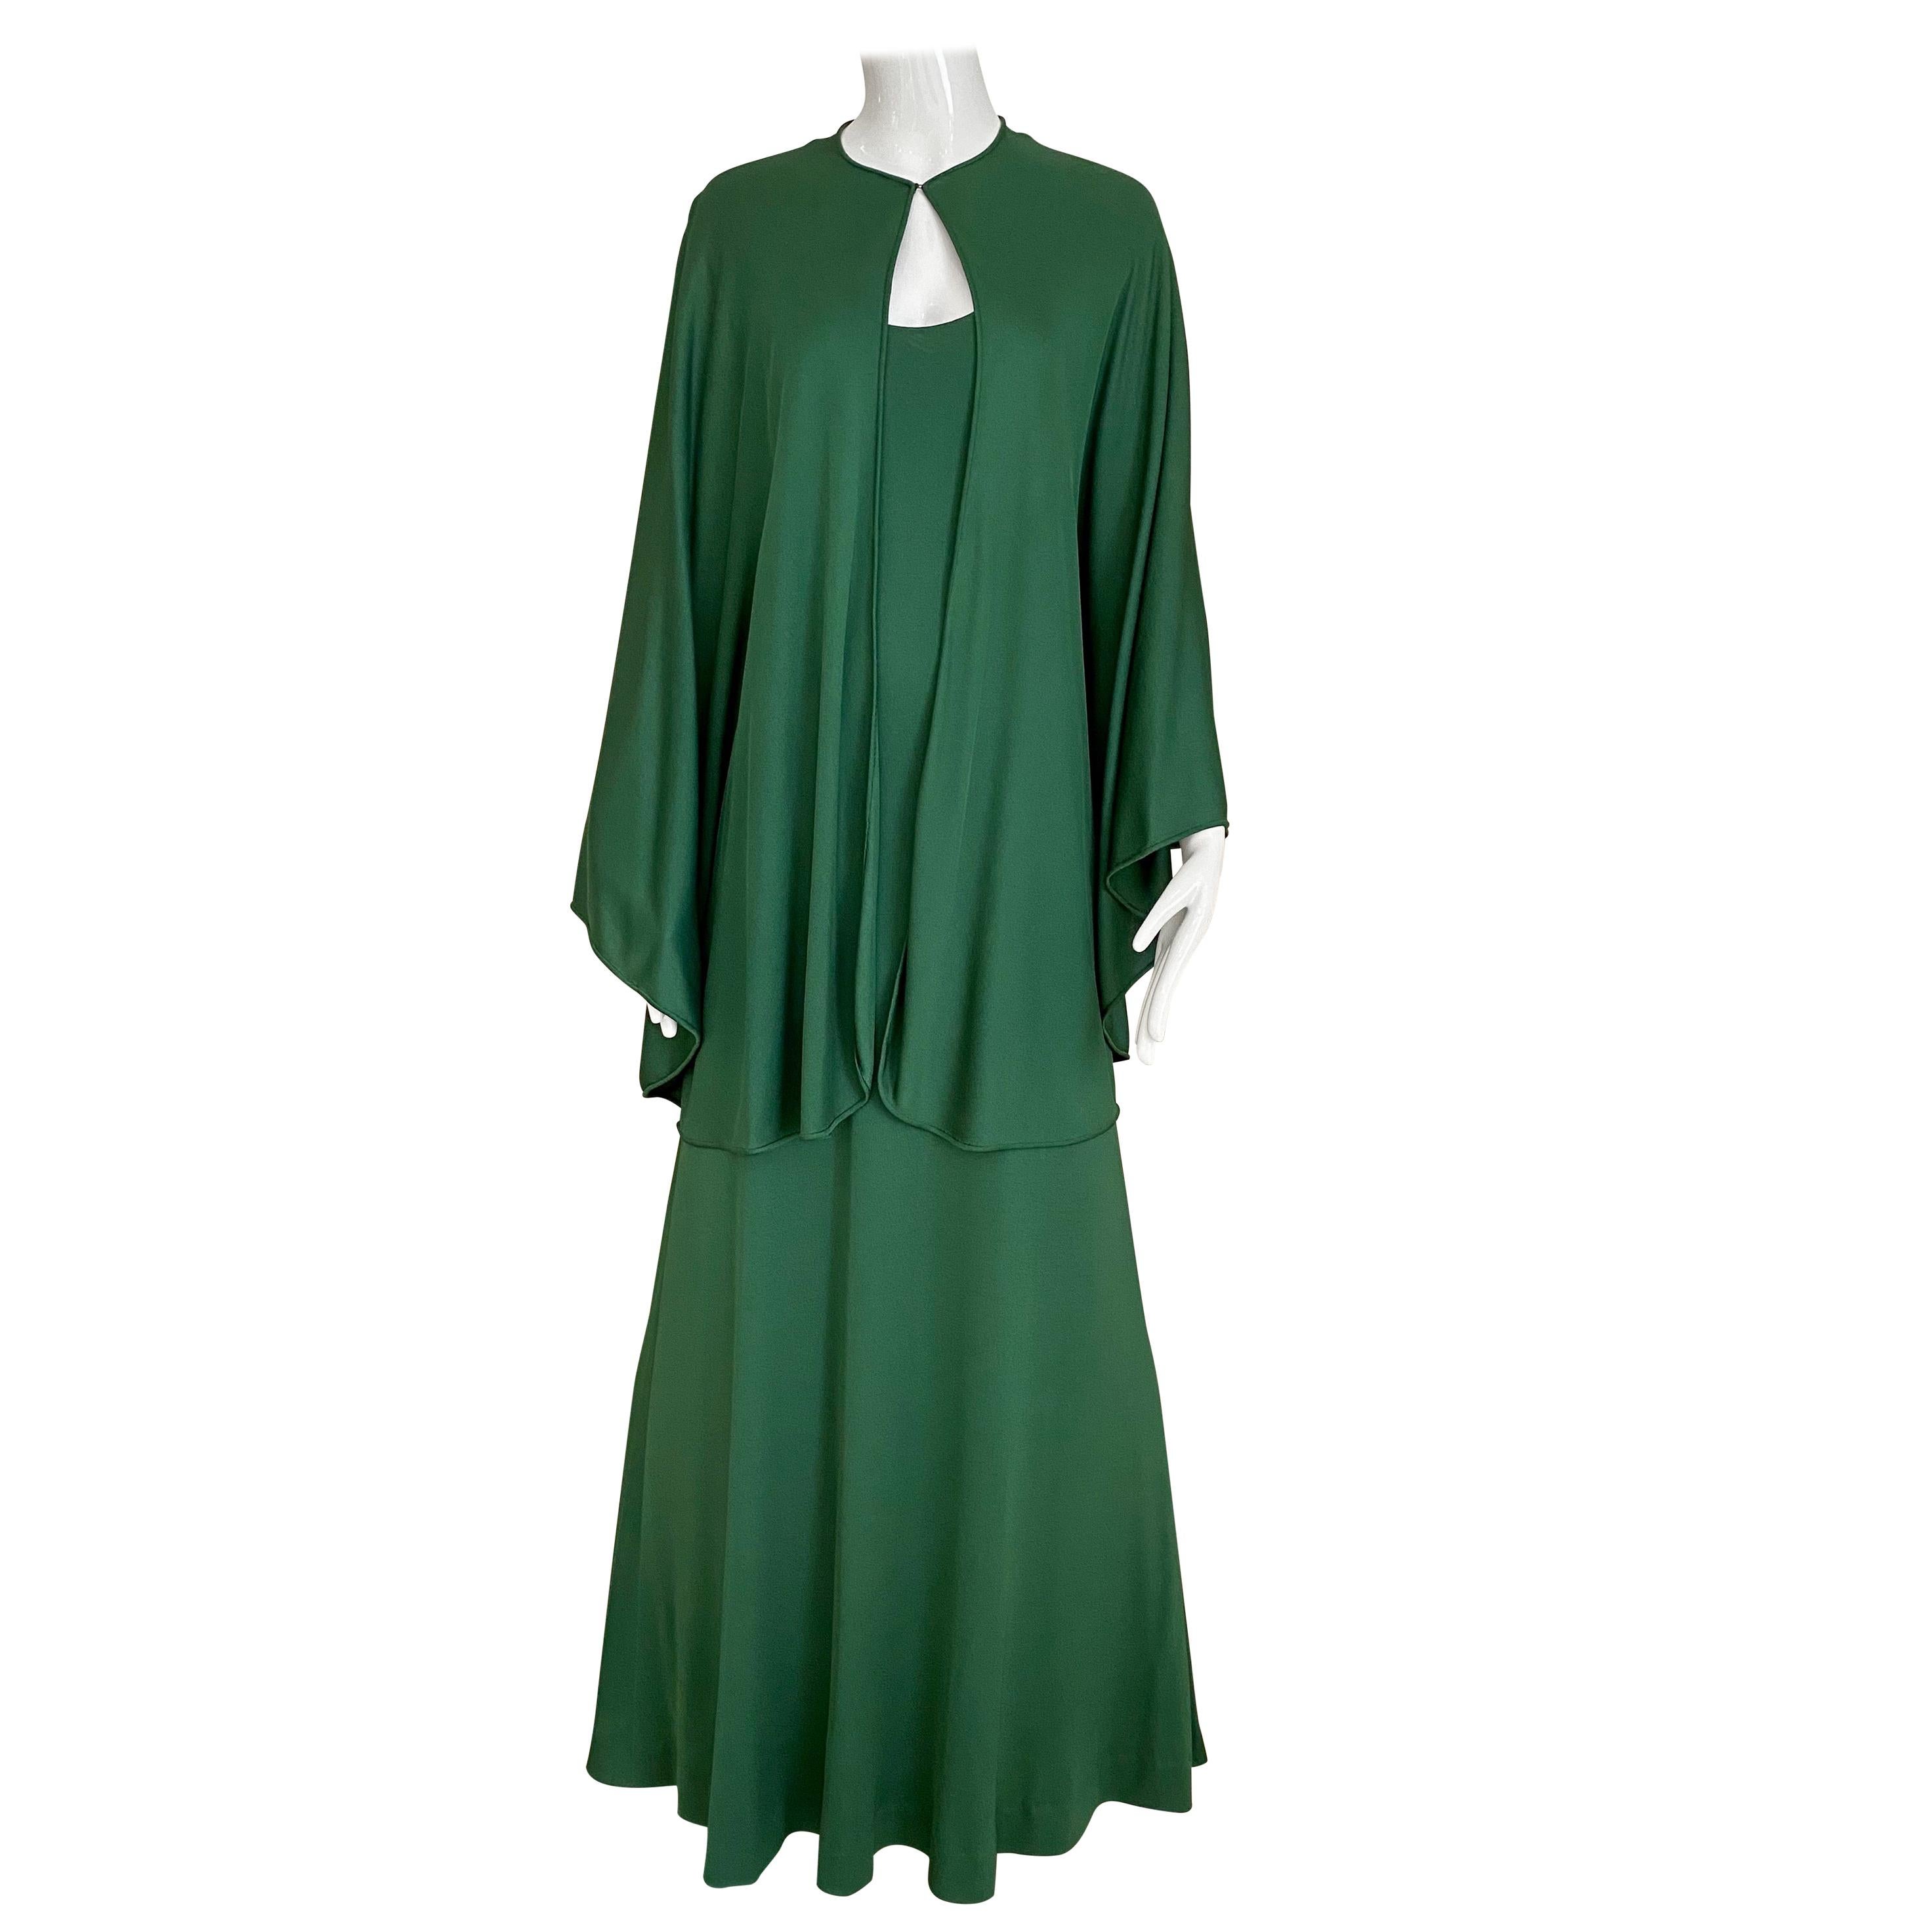 Robe sans manches avec cape en jersey vert mat Halston des années 1970